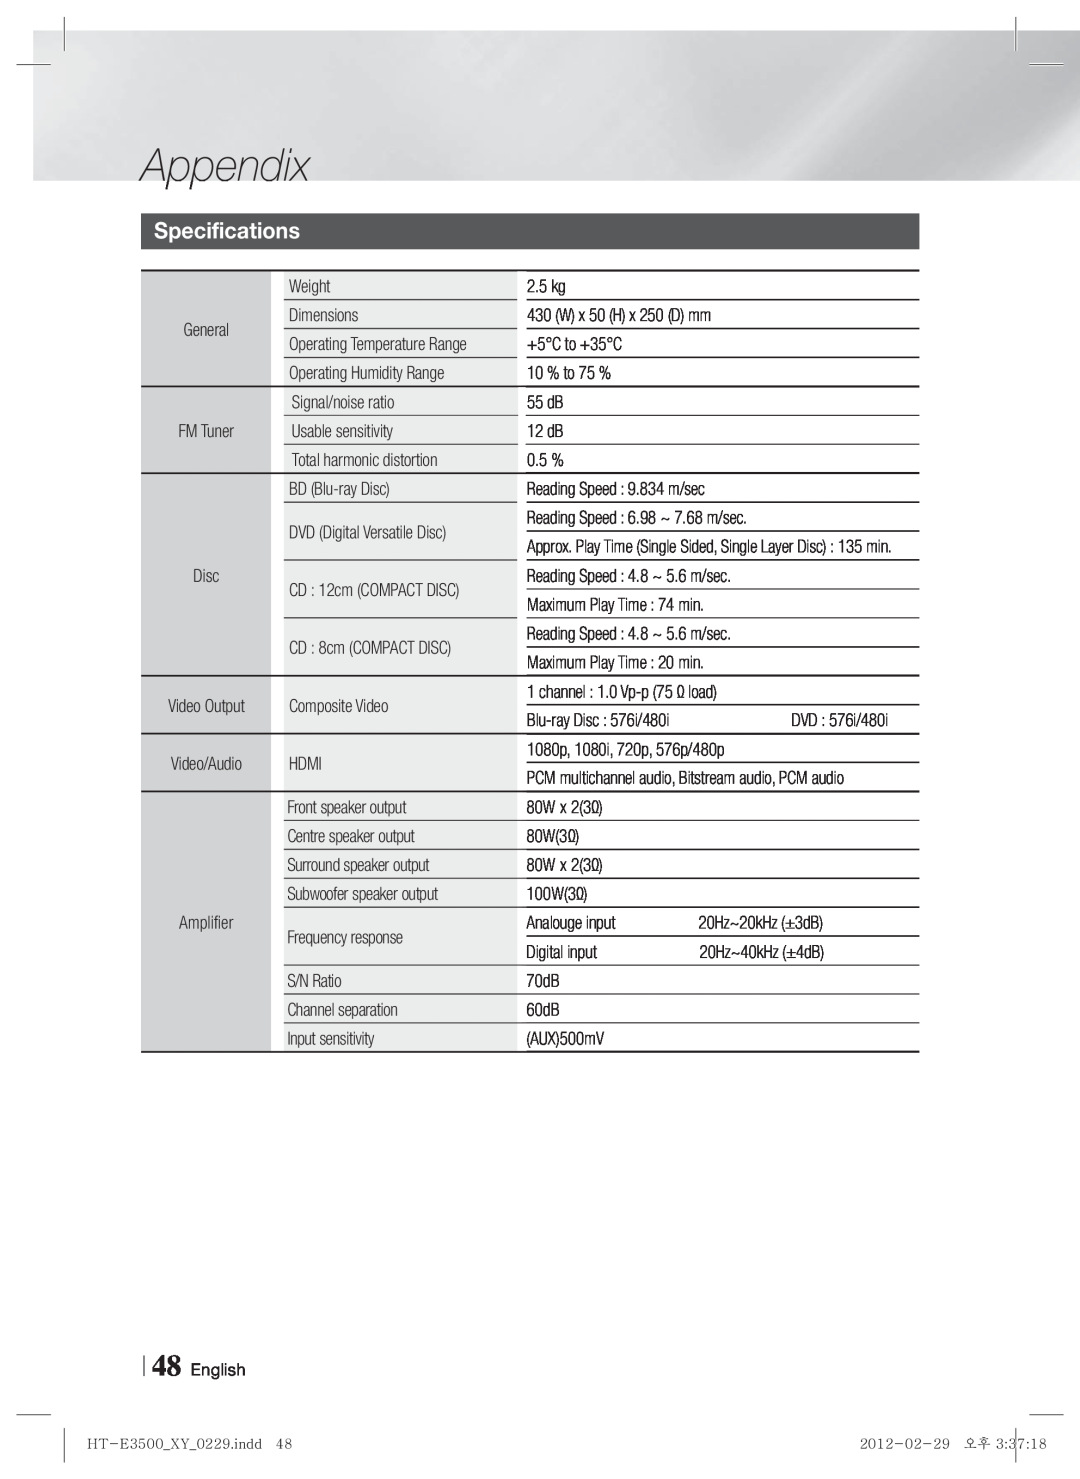 Samsung E3500, HT-E3550, HT-E3530 user manual Specifications, Appendix 